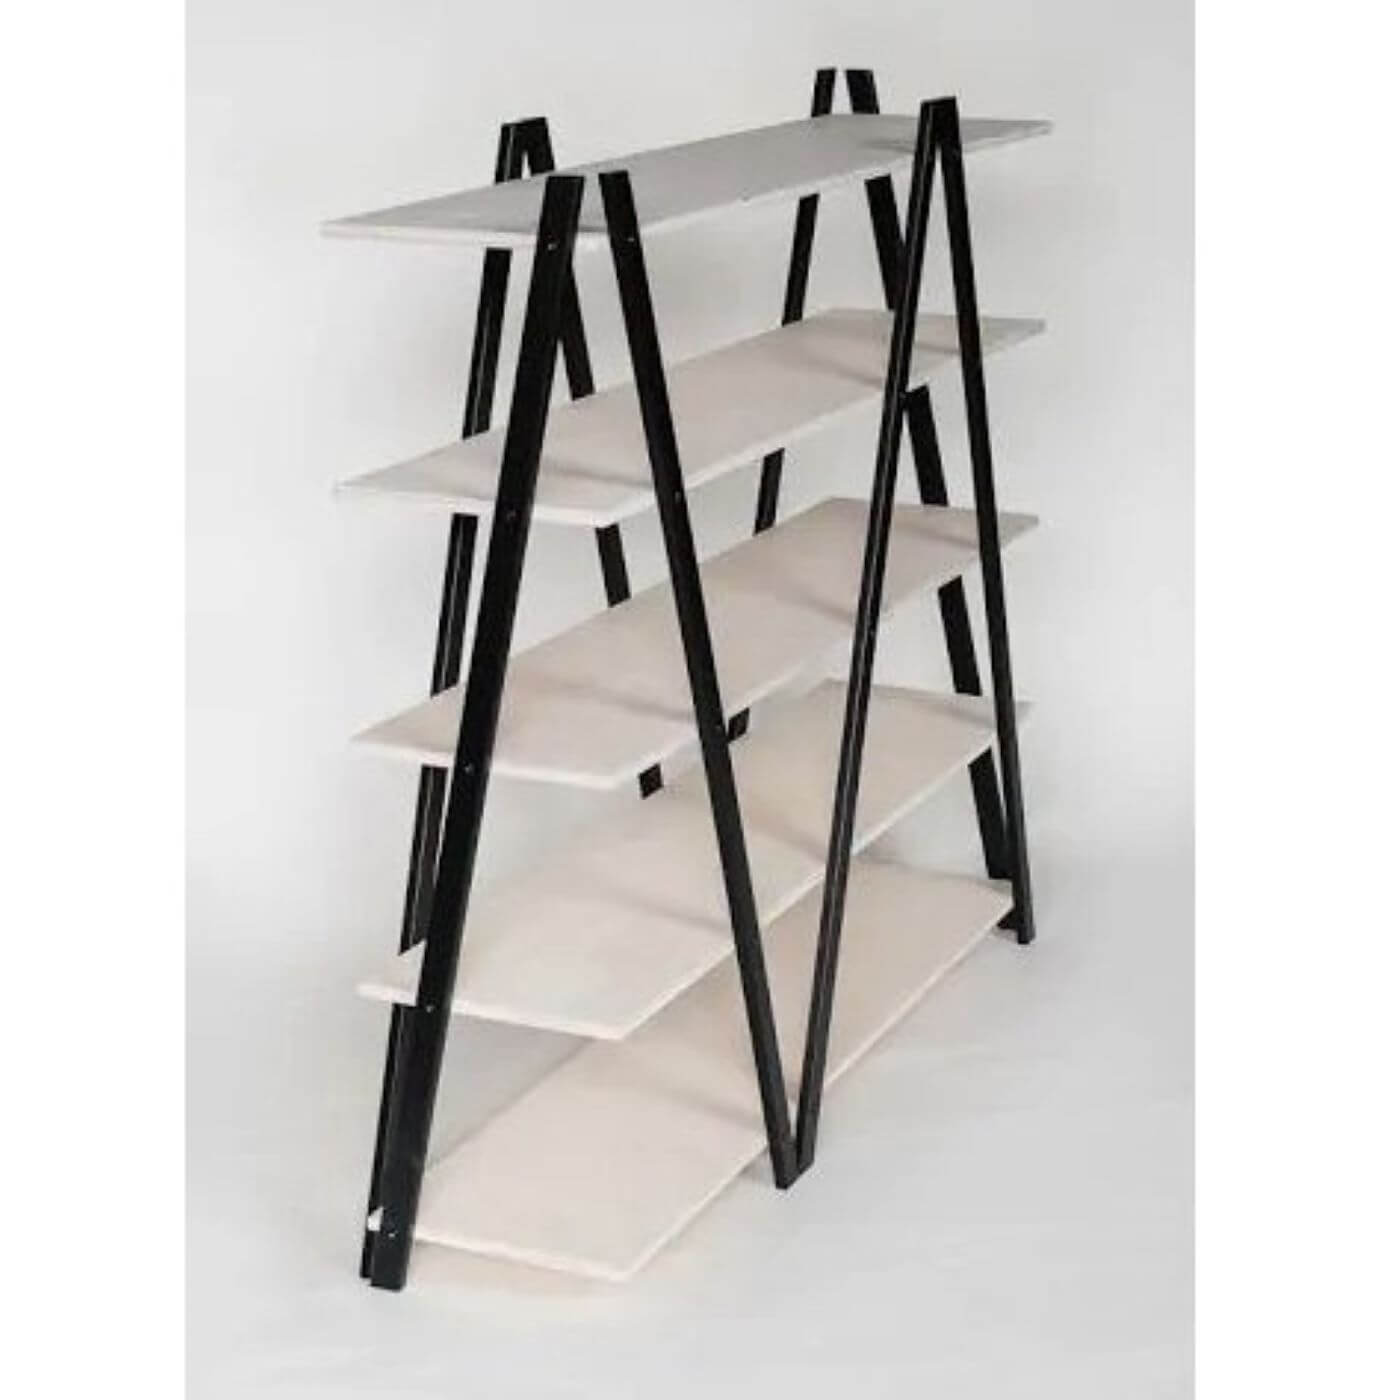 Regał industrialny SIK-SAK półki białe nogi czarne wysoki 136 cm. 5 półek na książki ze skandynawskiej sklejki widok bokiem